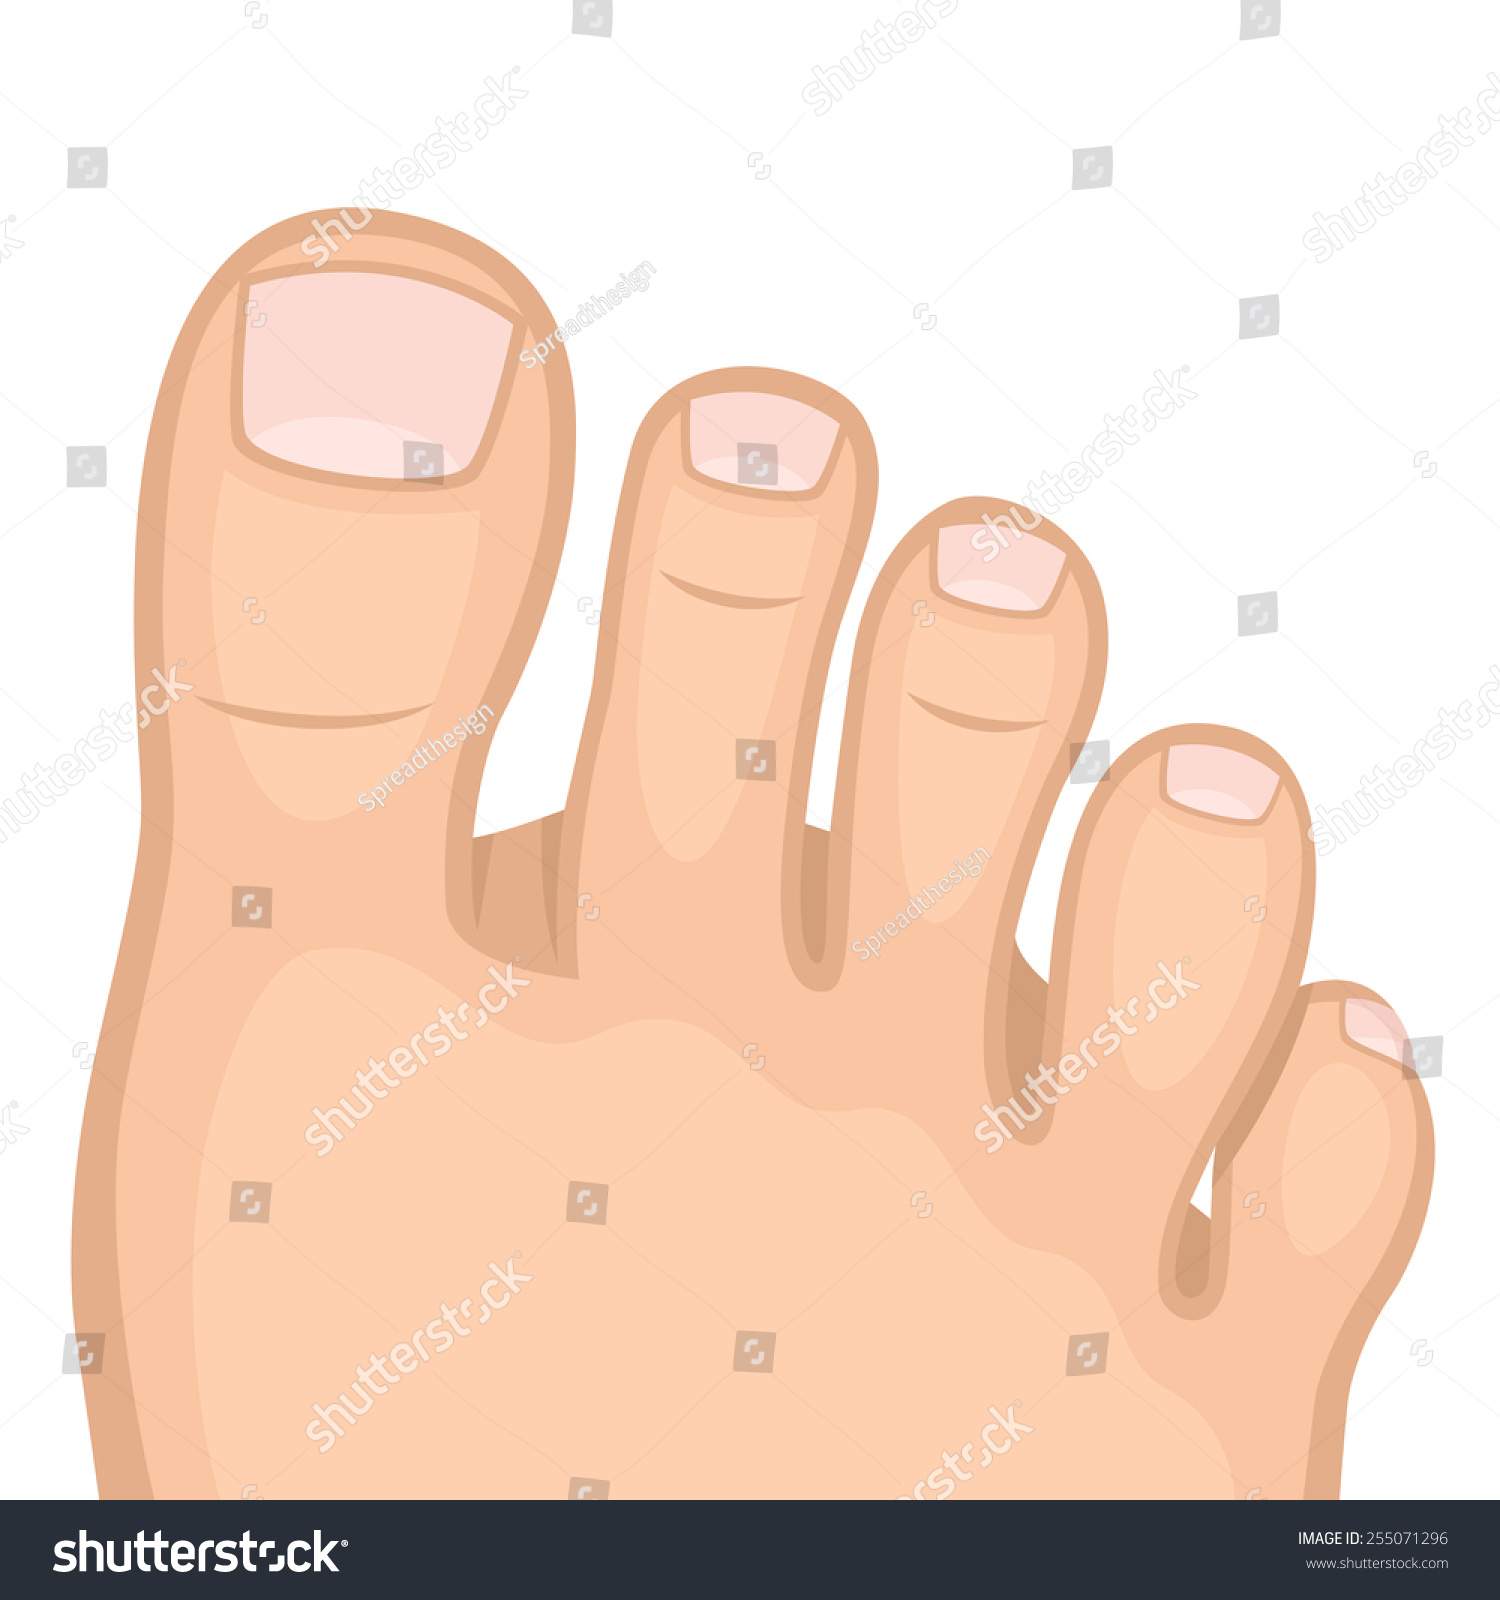 clipart of a big toe - photo #24